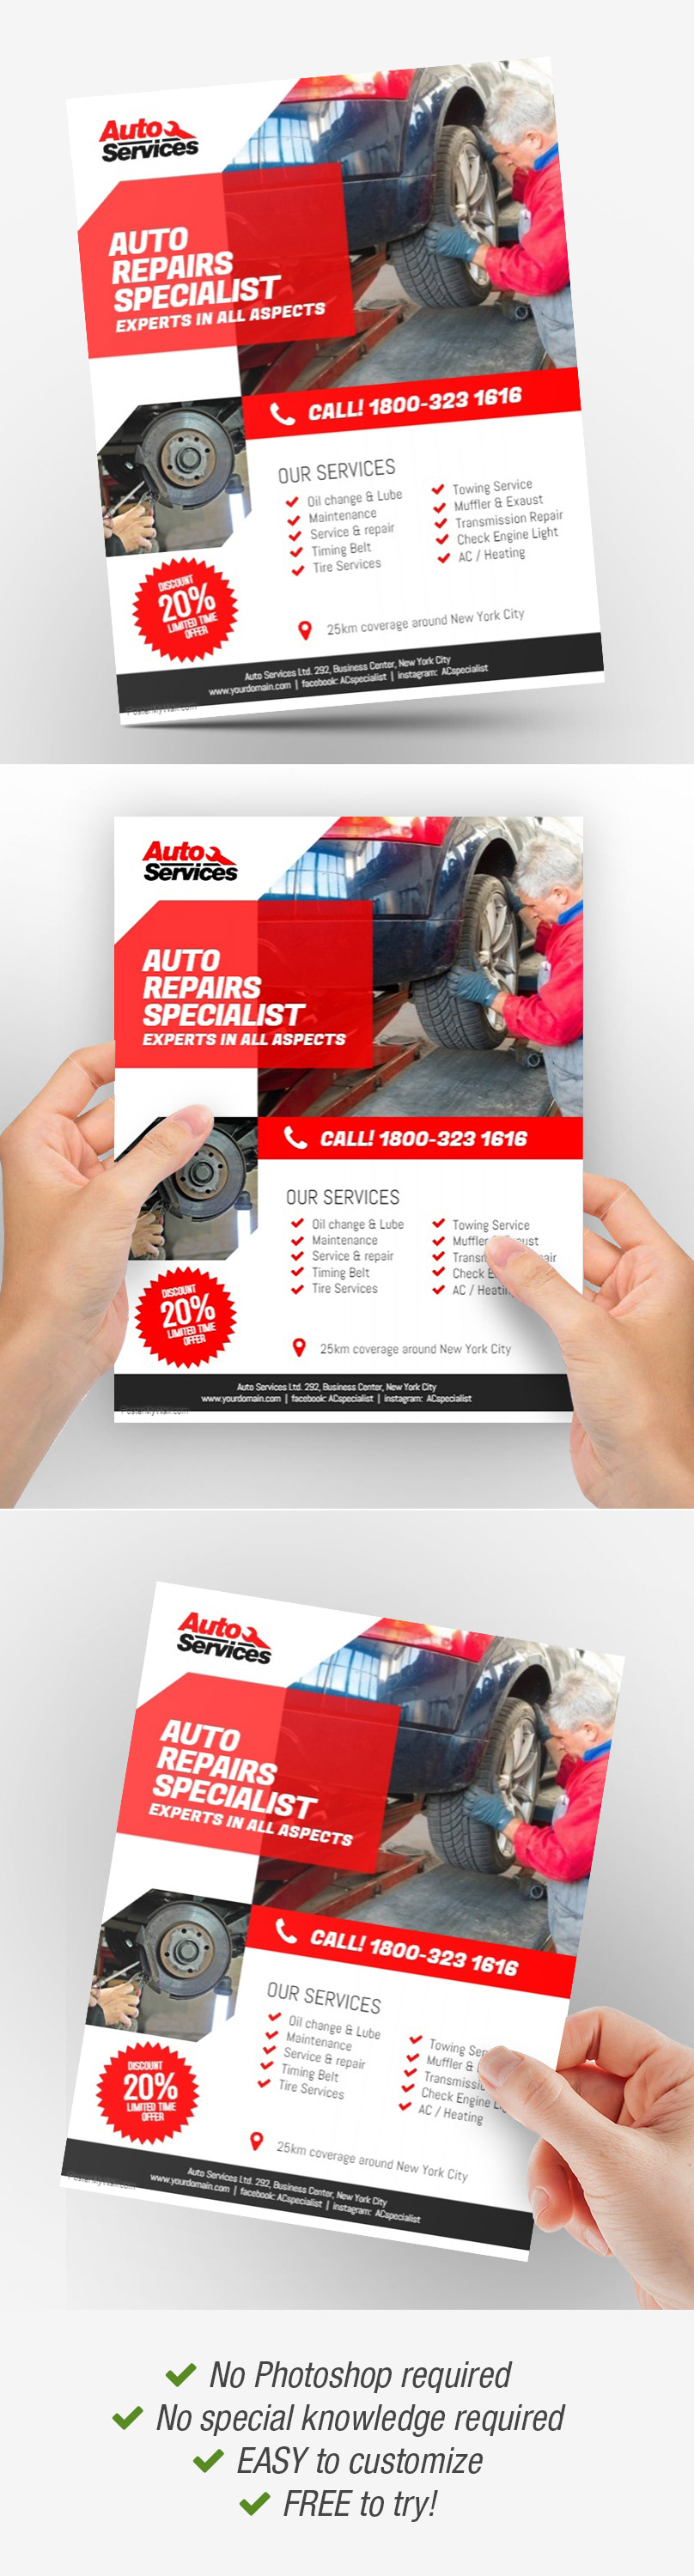 Auto Body Repair auto body shop template auto care Auto Repair Auto Repair Service